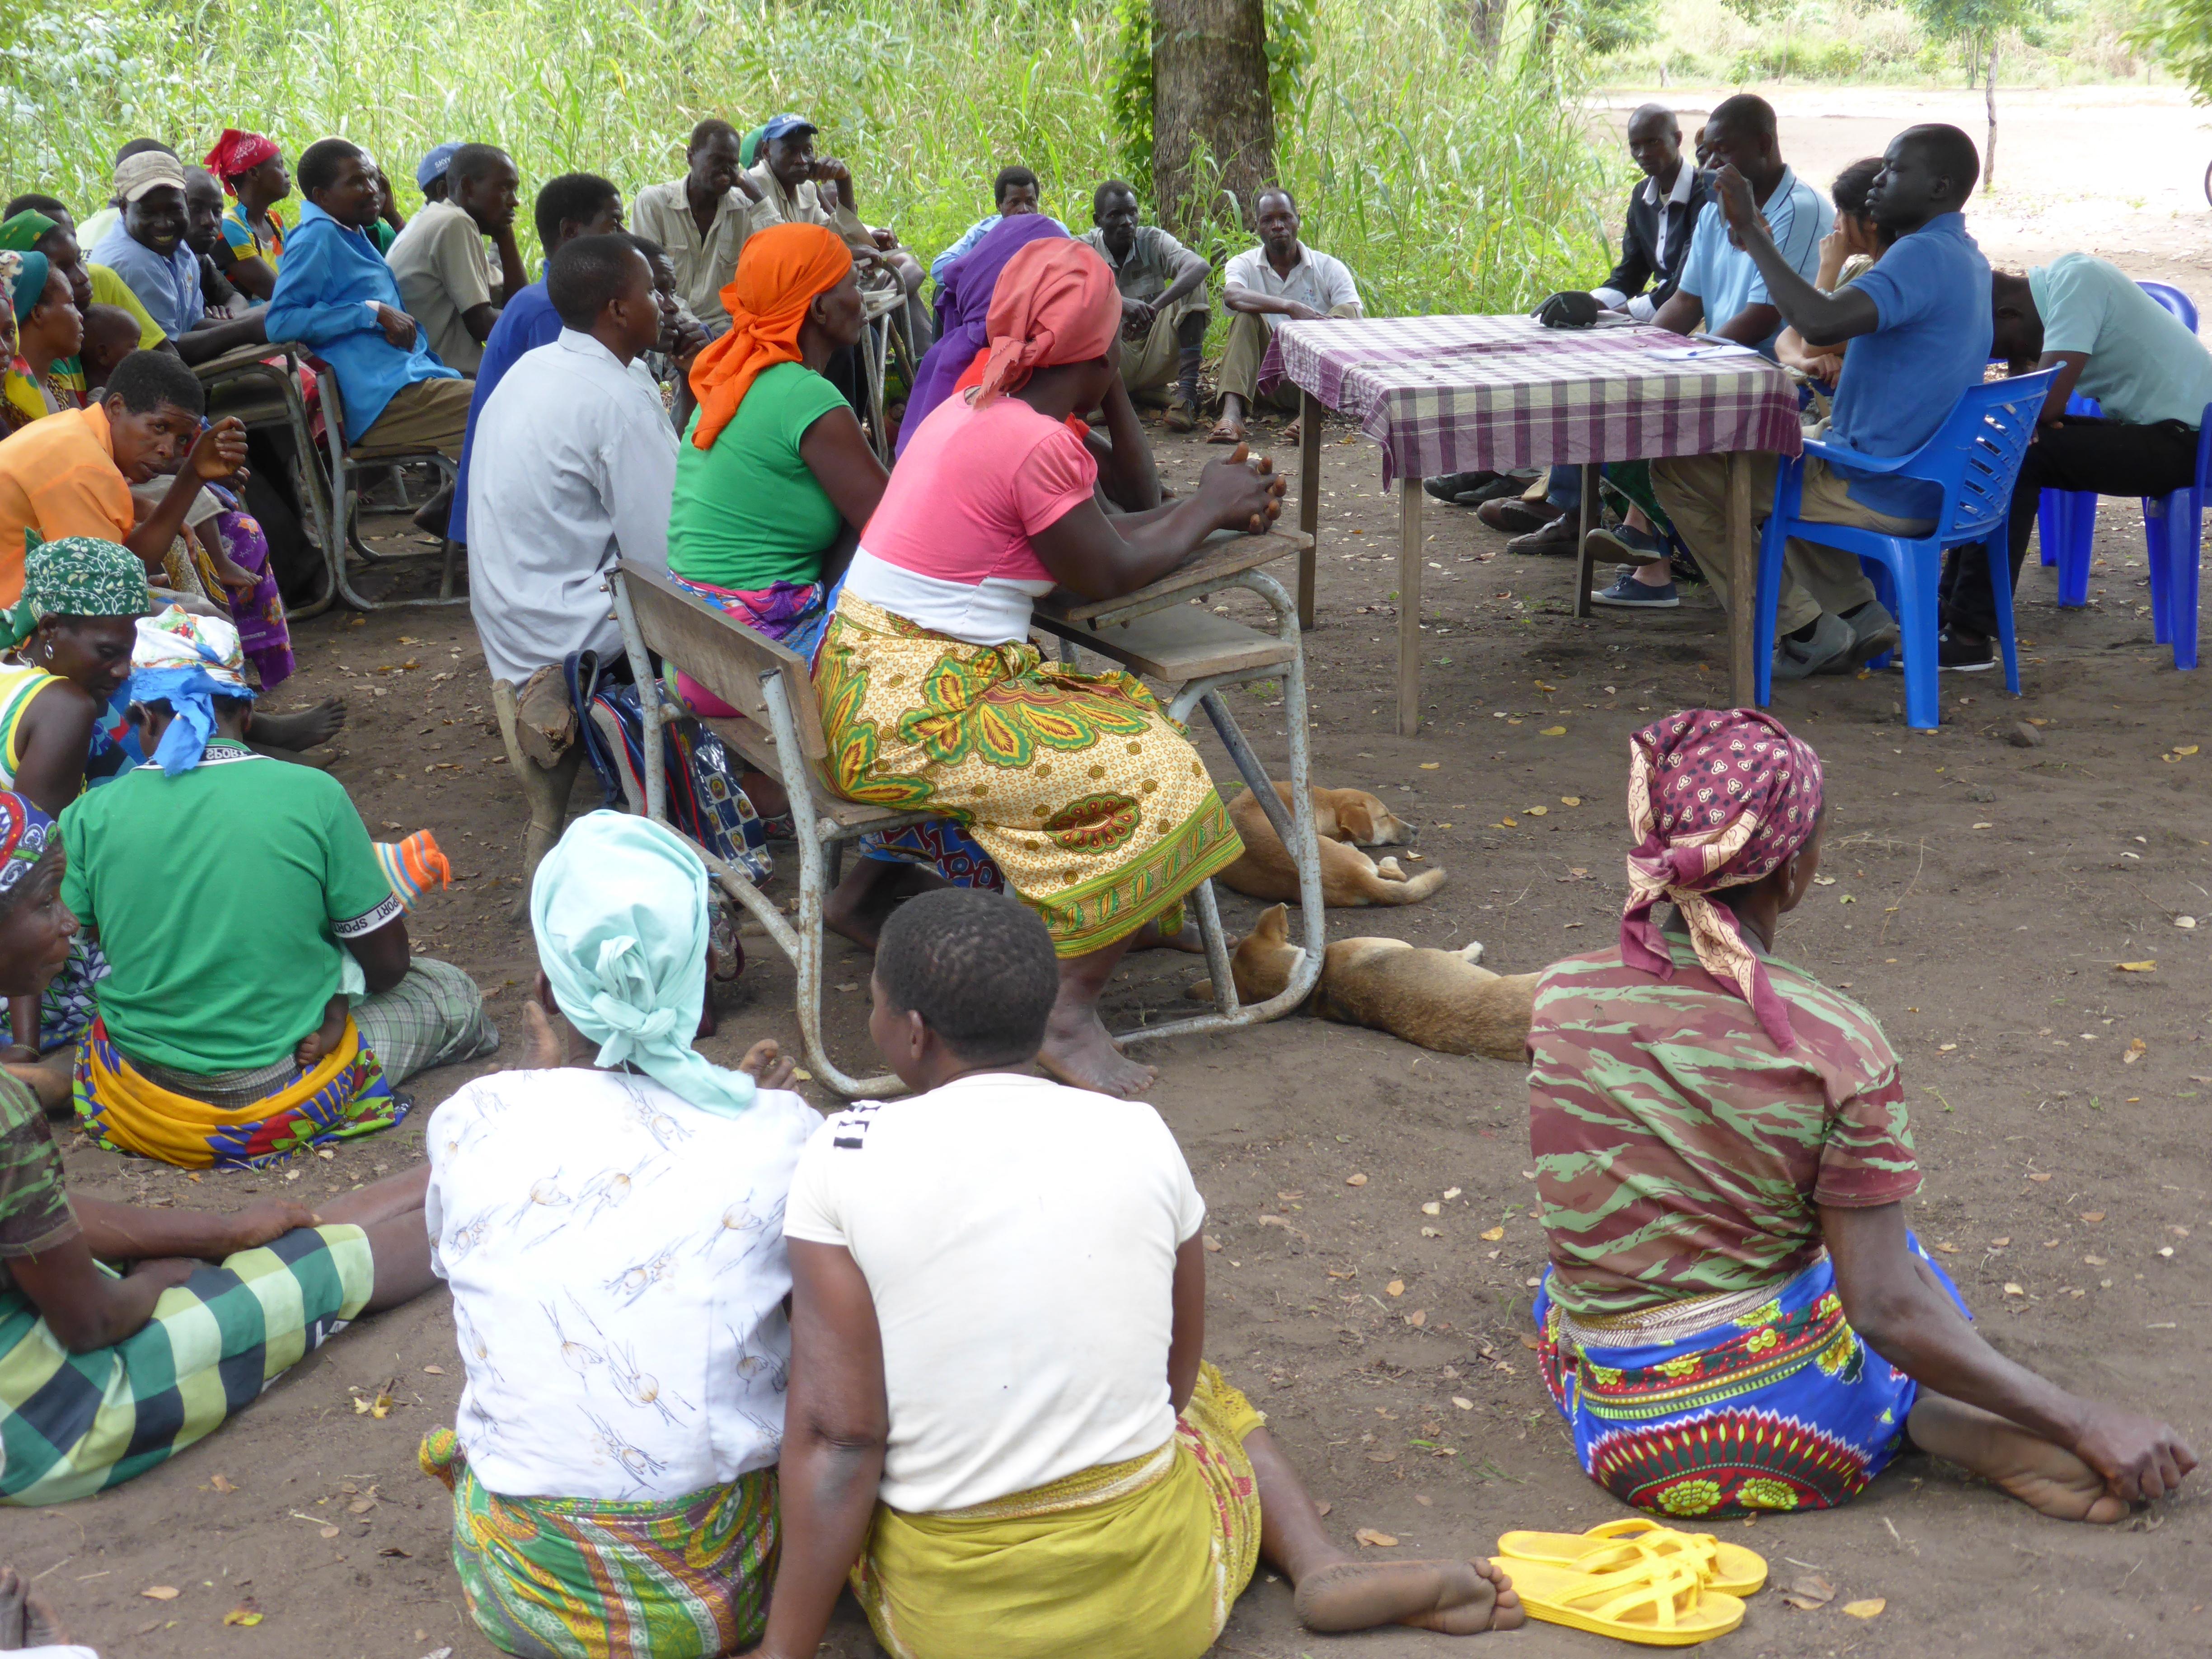 LWB-Mitarbeitende sammeln Informationen zur Menschenrechtssituation in einem Dorf in Mosambik. Foto: S. Oftadeh